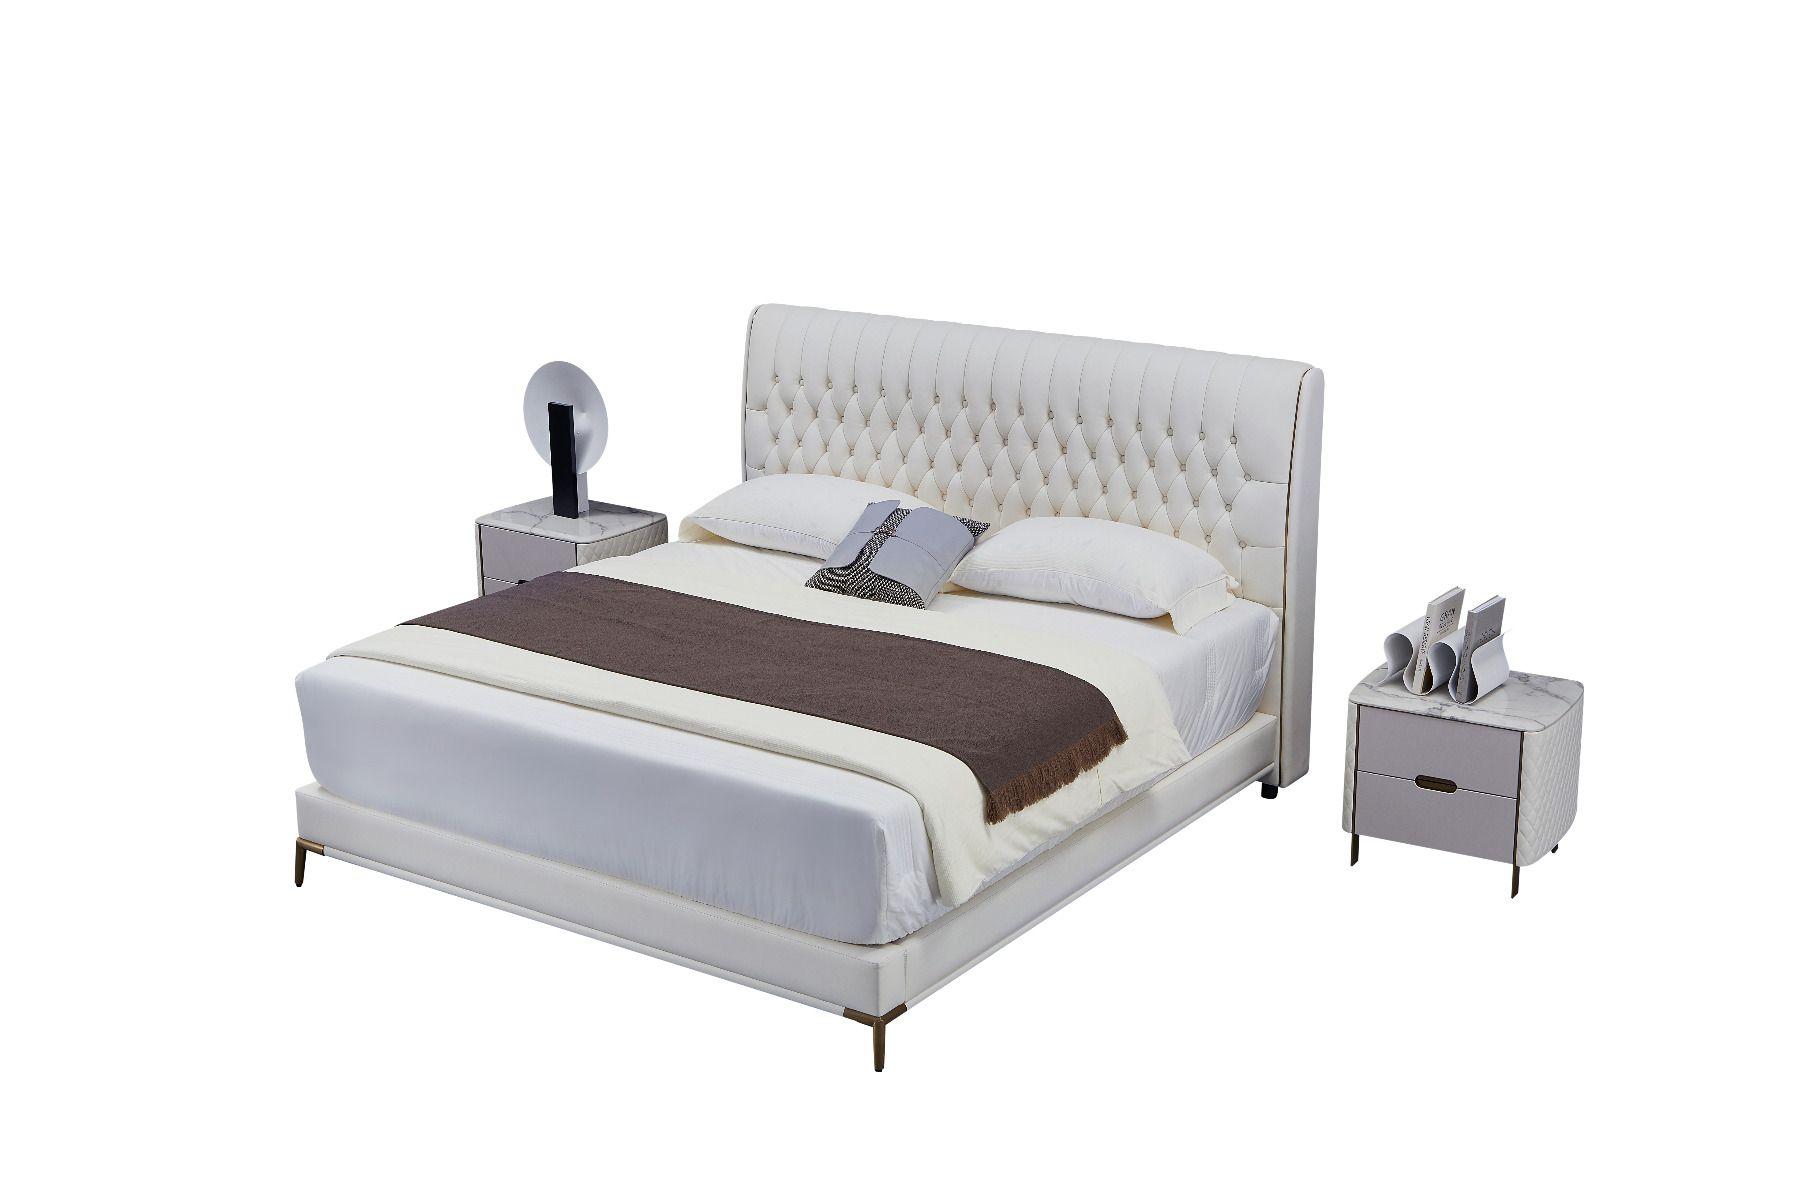 

    
American Eagle Furniture B-Y2011-Q Platform Bed Gray B-Y2011-Q
